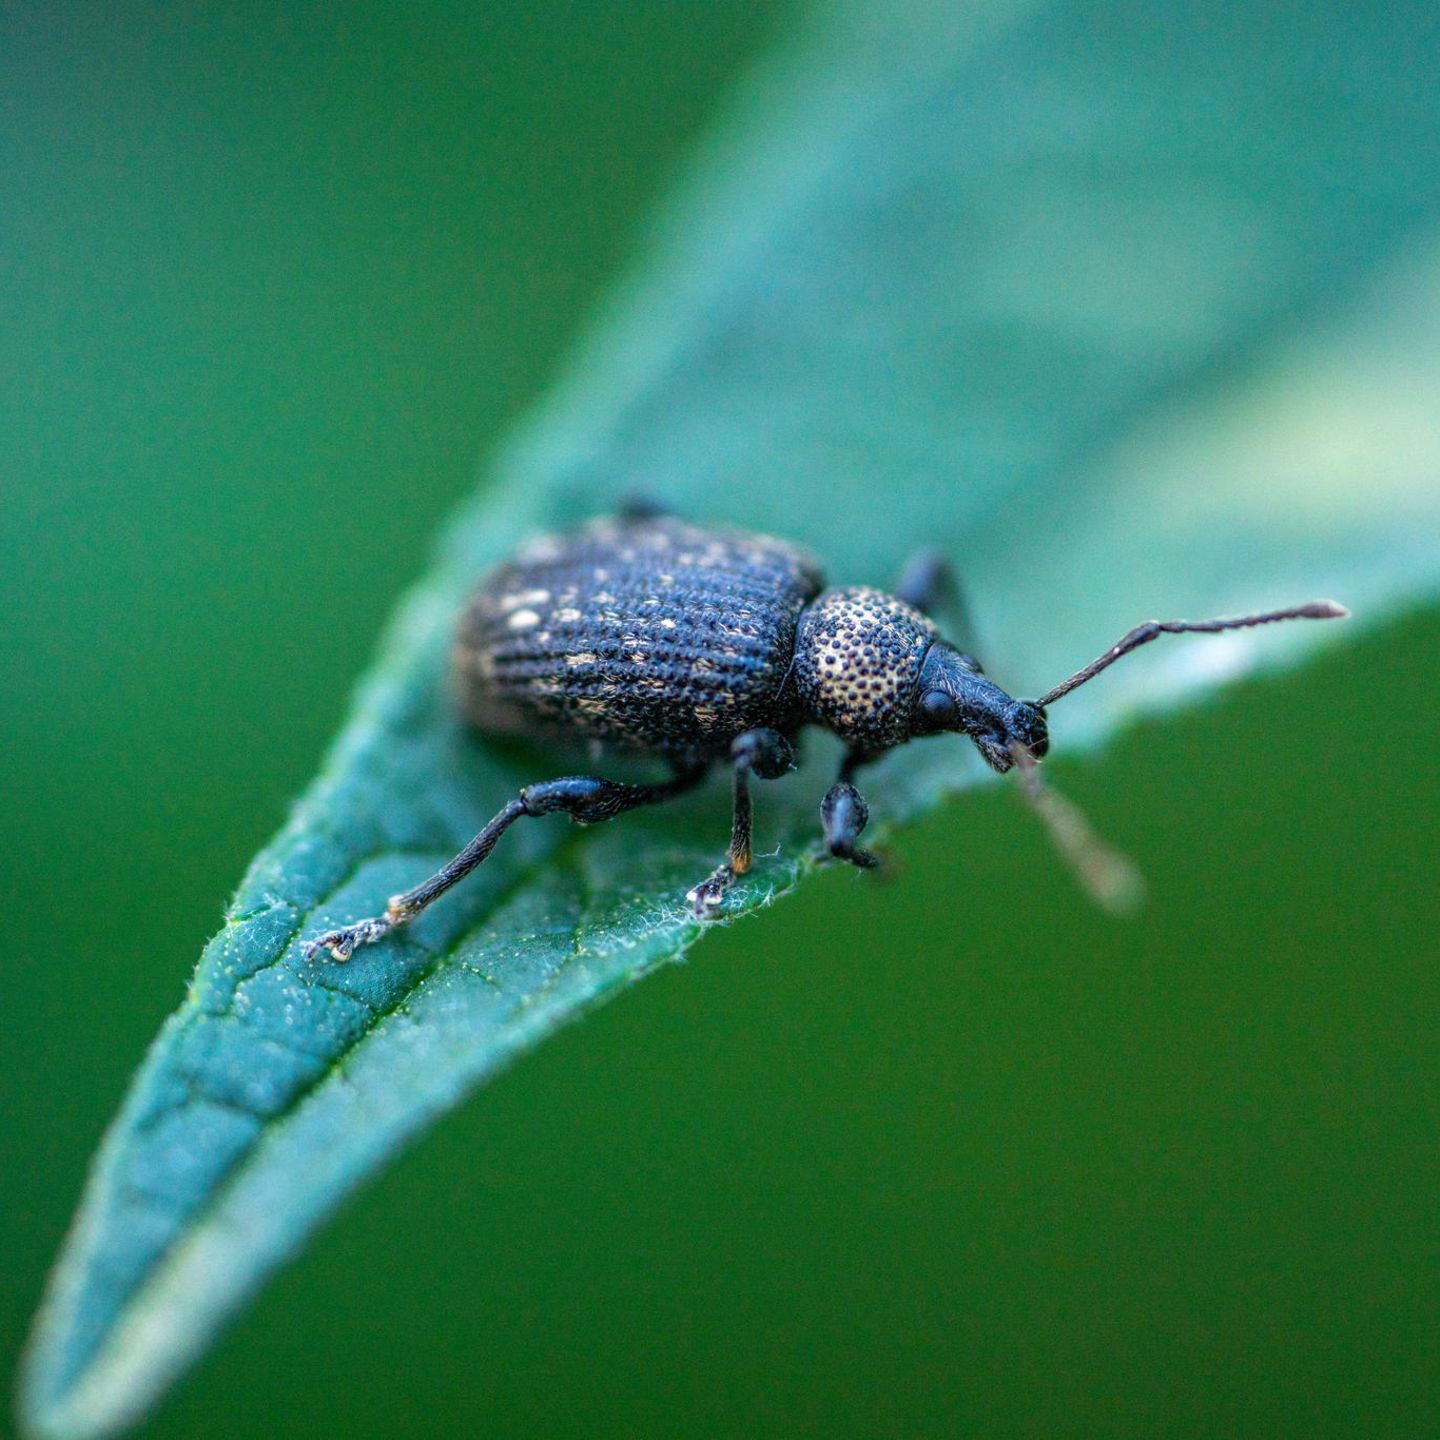 Käfer im Haus: Schädlinge erkennen und schnell wieder loswerden